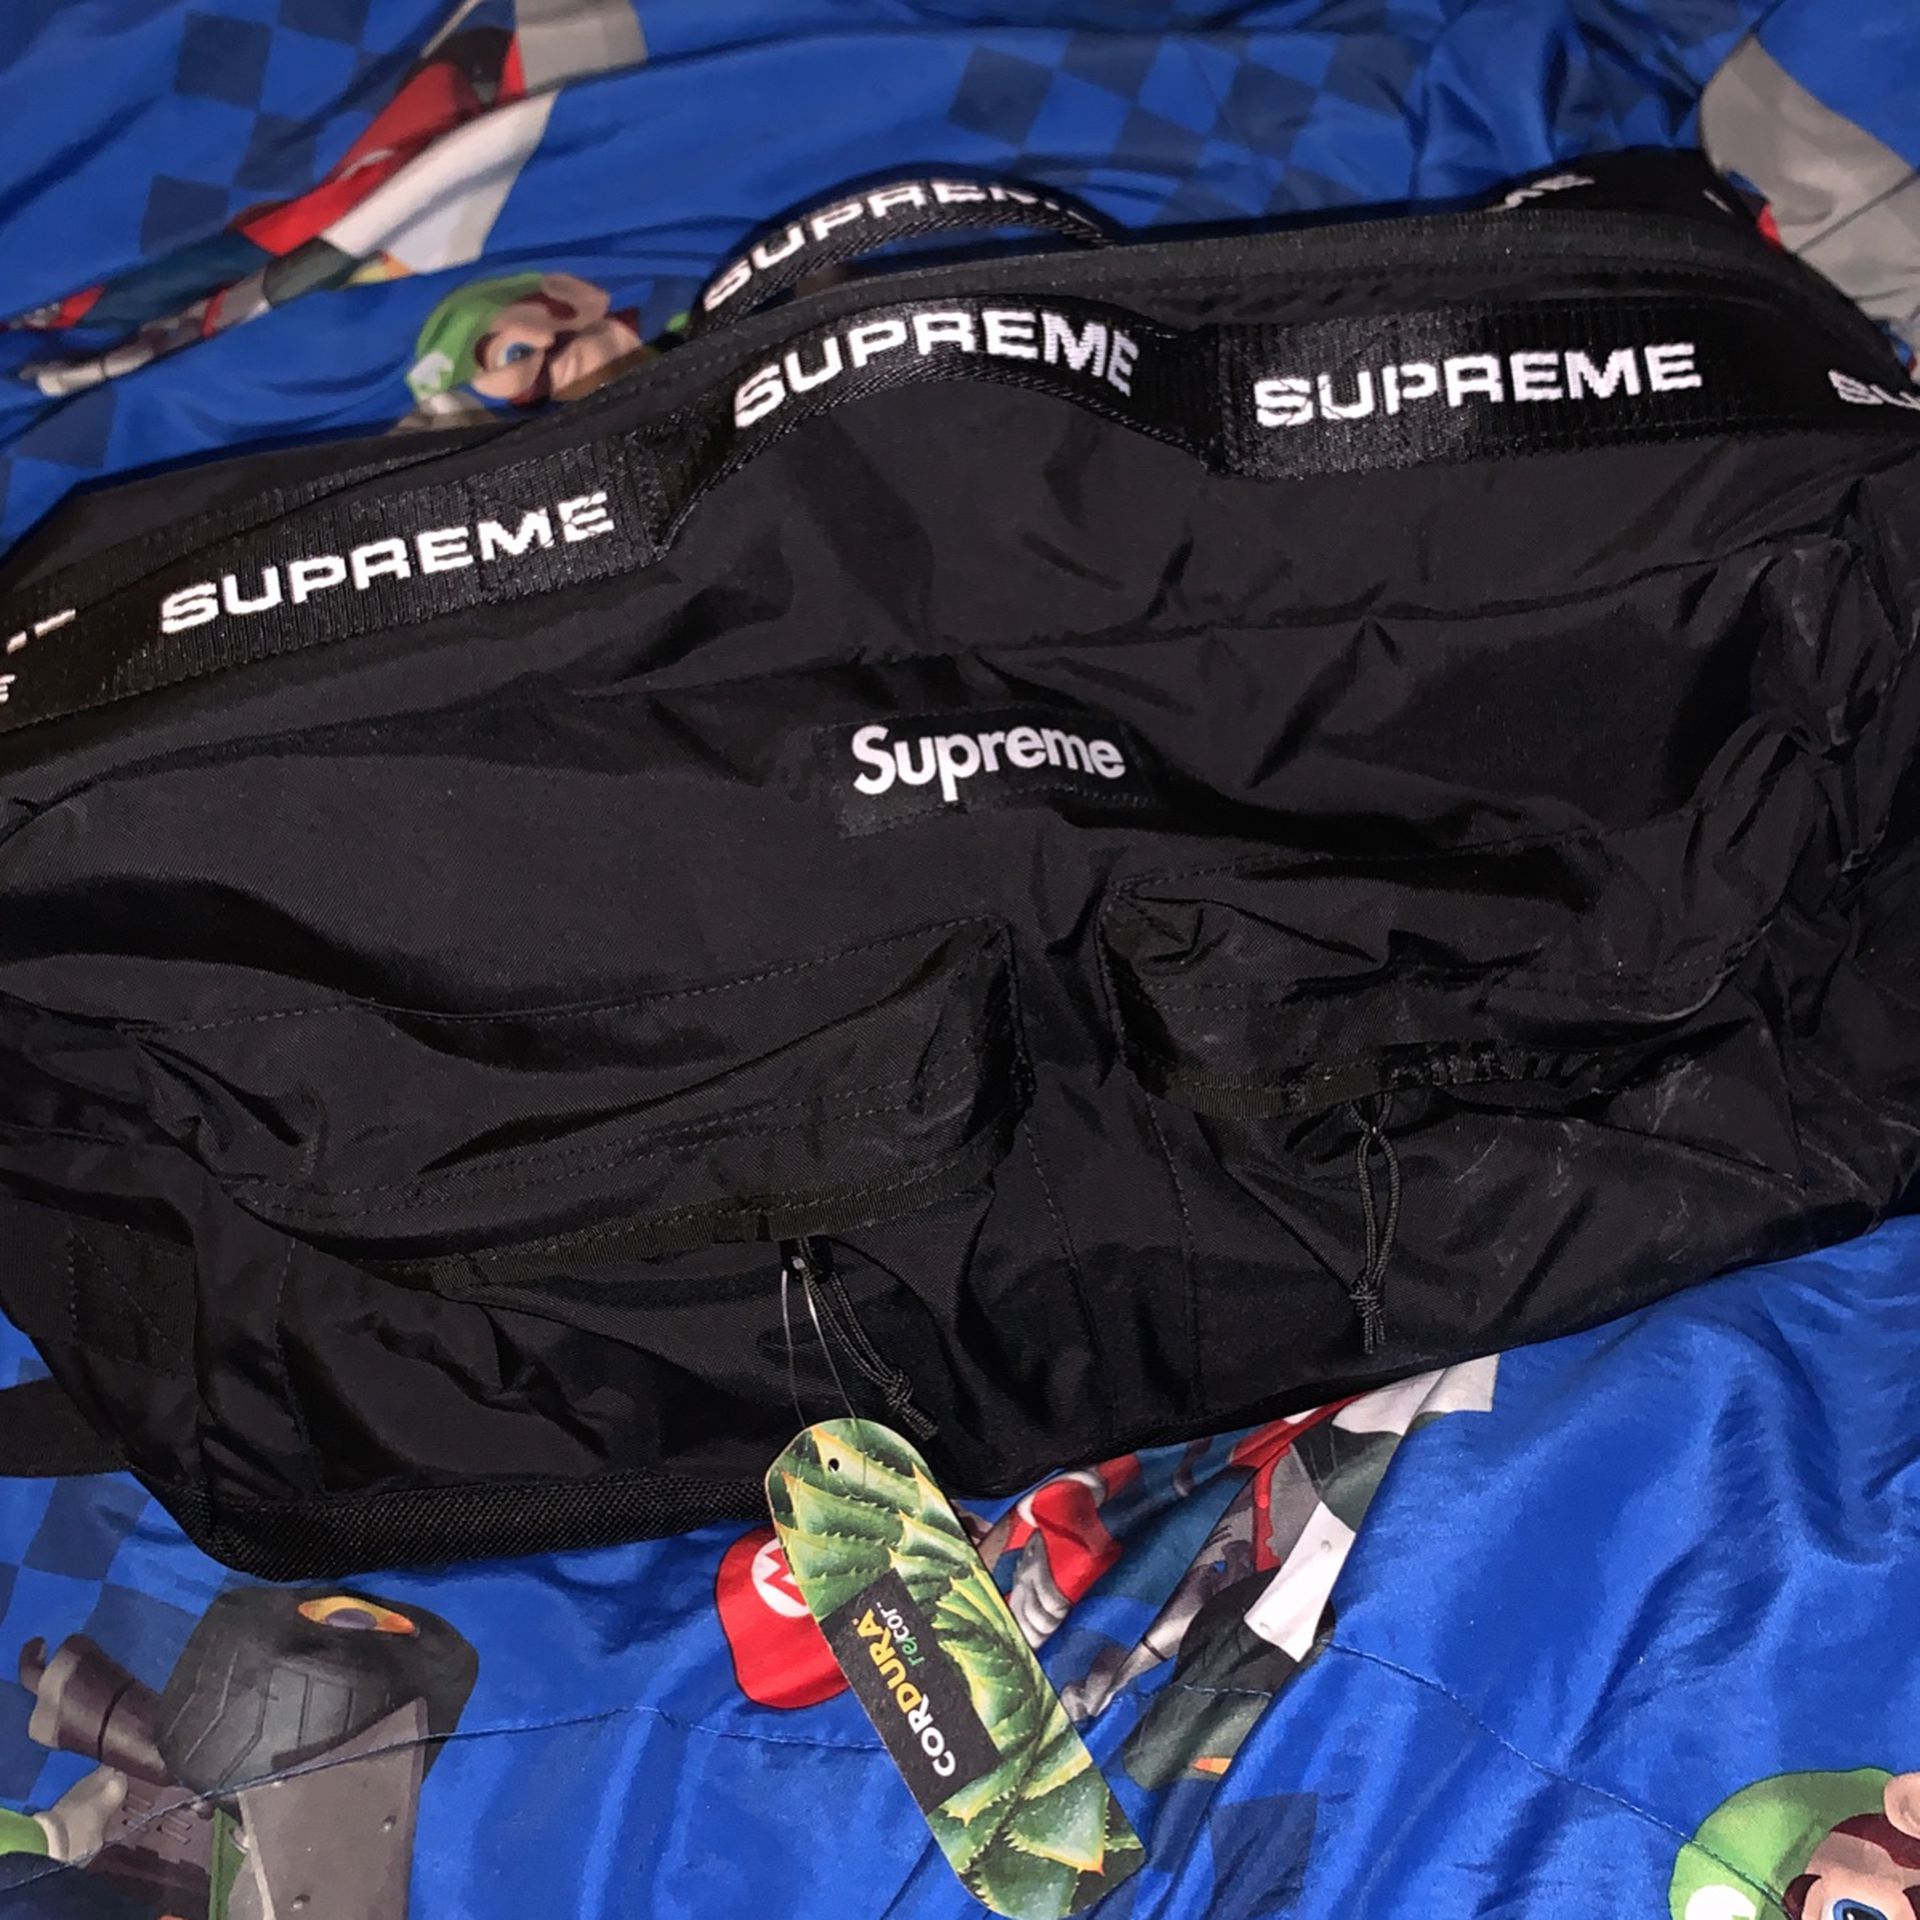 Supreme Duffle Bag 